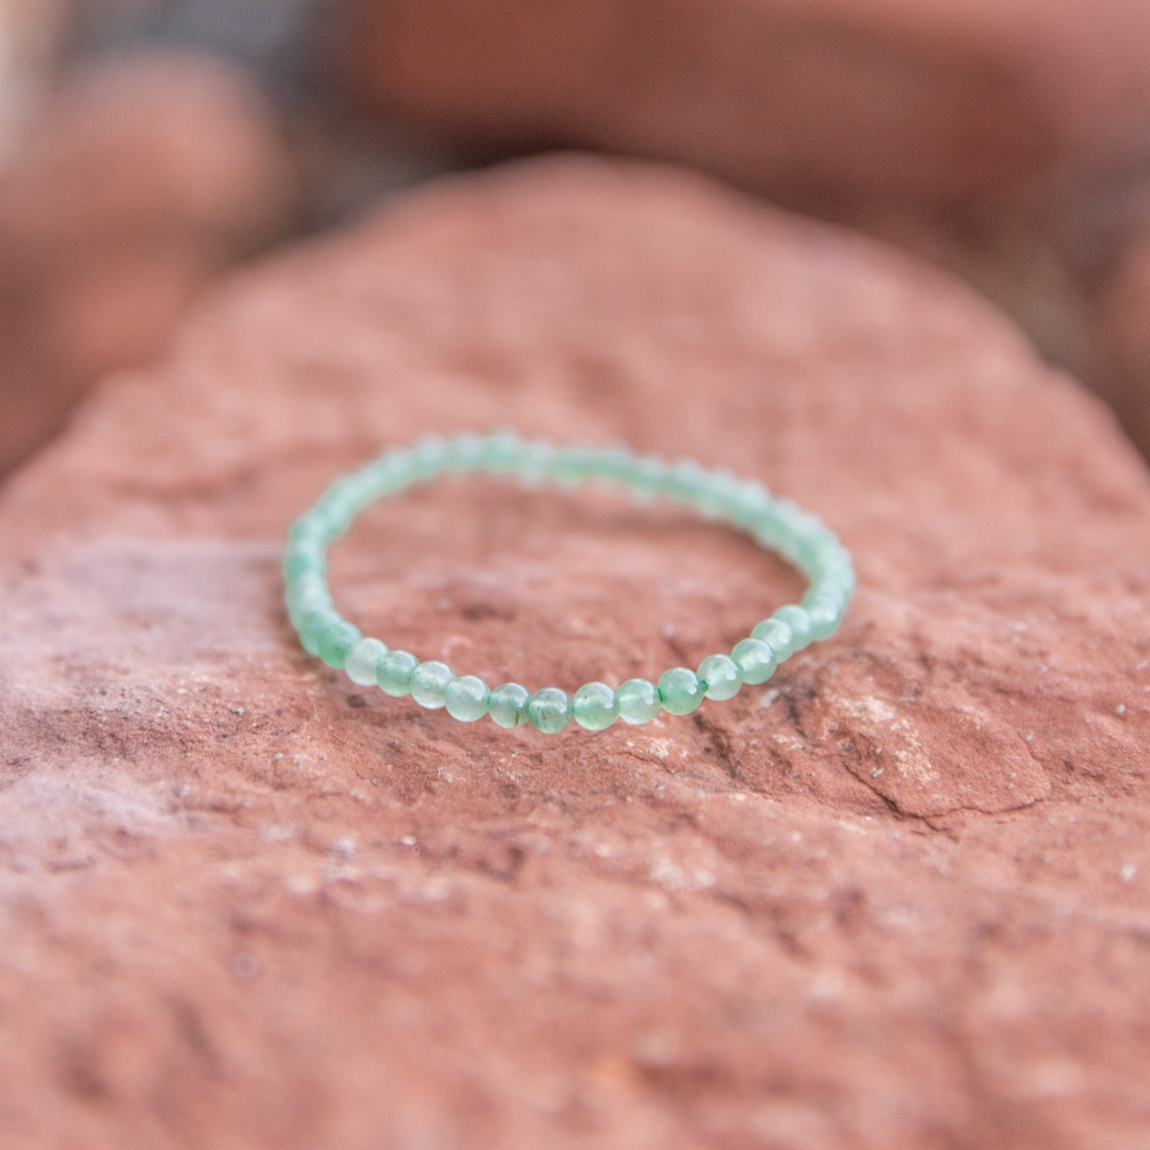 Green Aventurine Beaded Bracelet - Small Beads